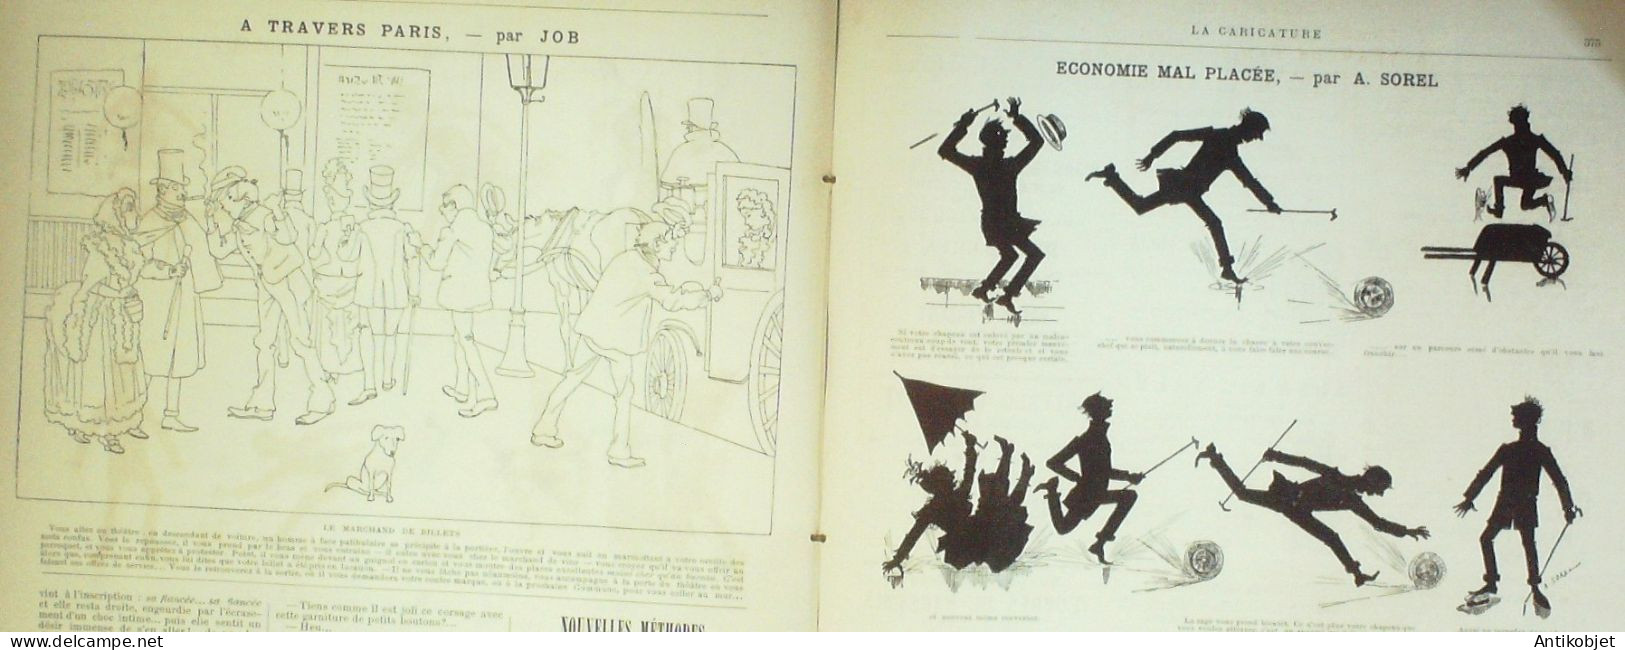 La Caricature 1886 N°359 Draner Richepin Par Luque Malabar Par TrockSorel - Zeitschriften - Vor 1900